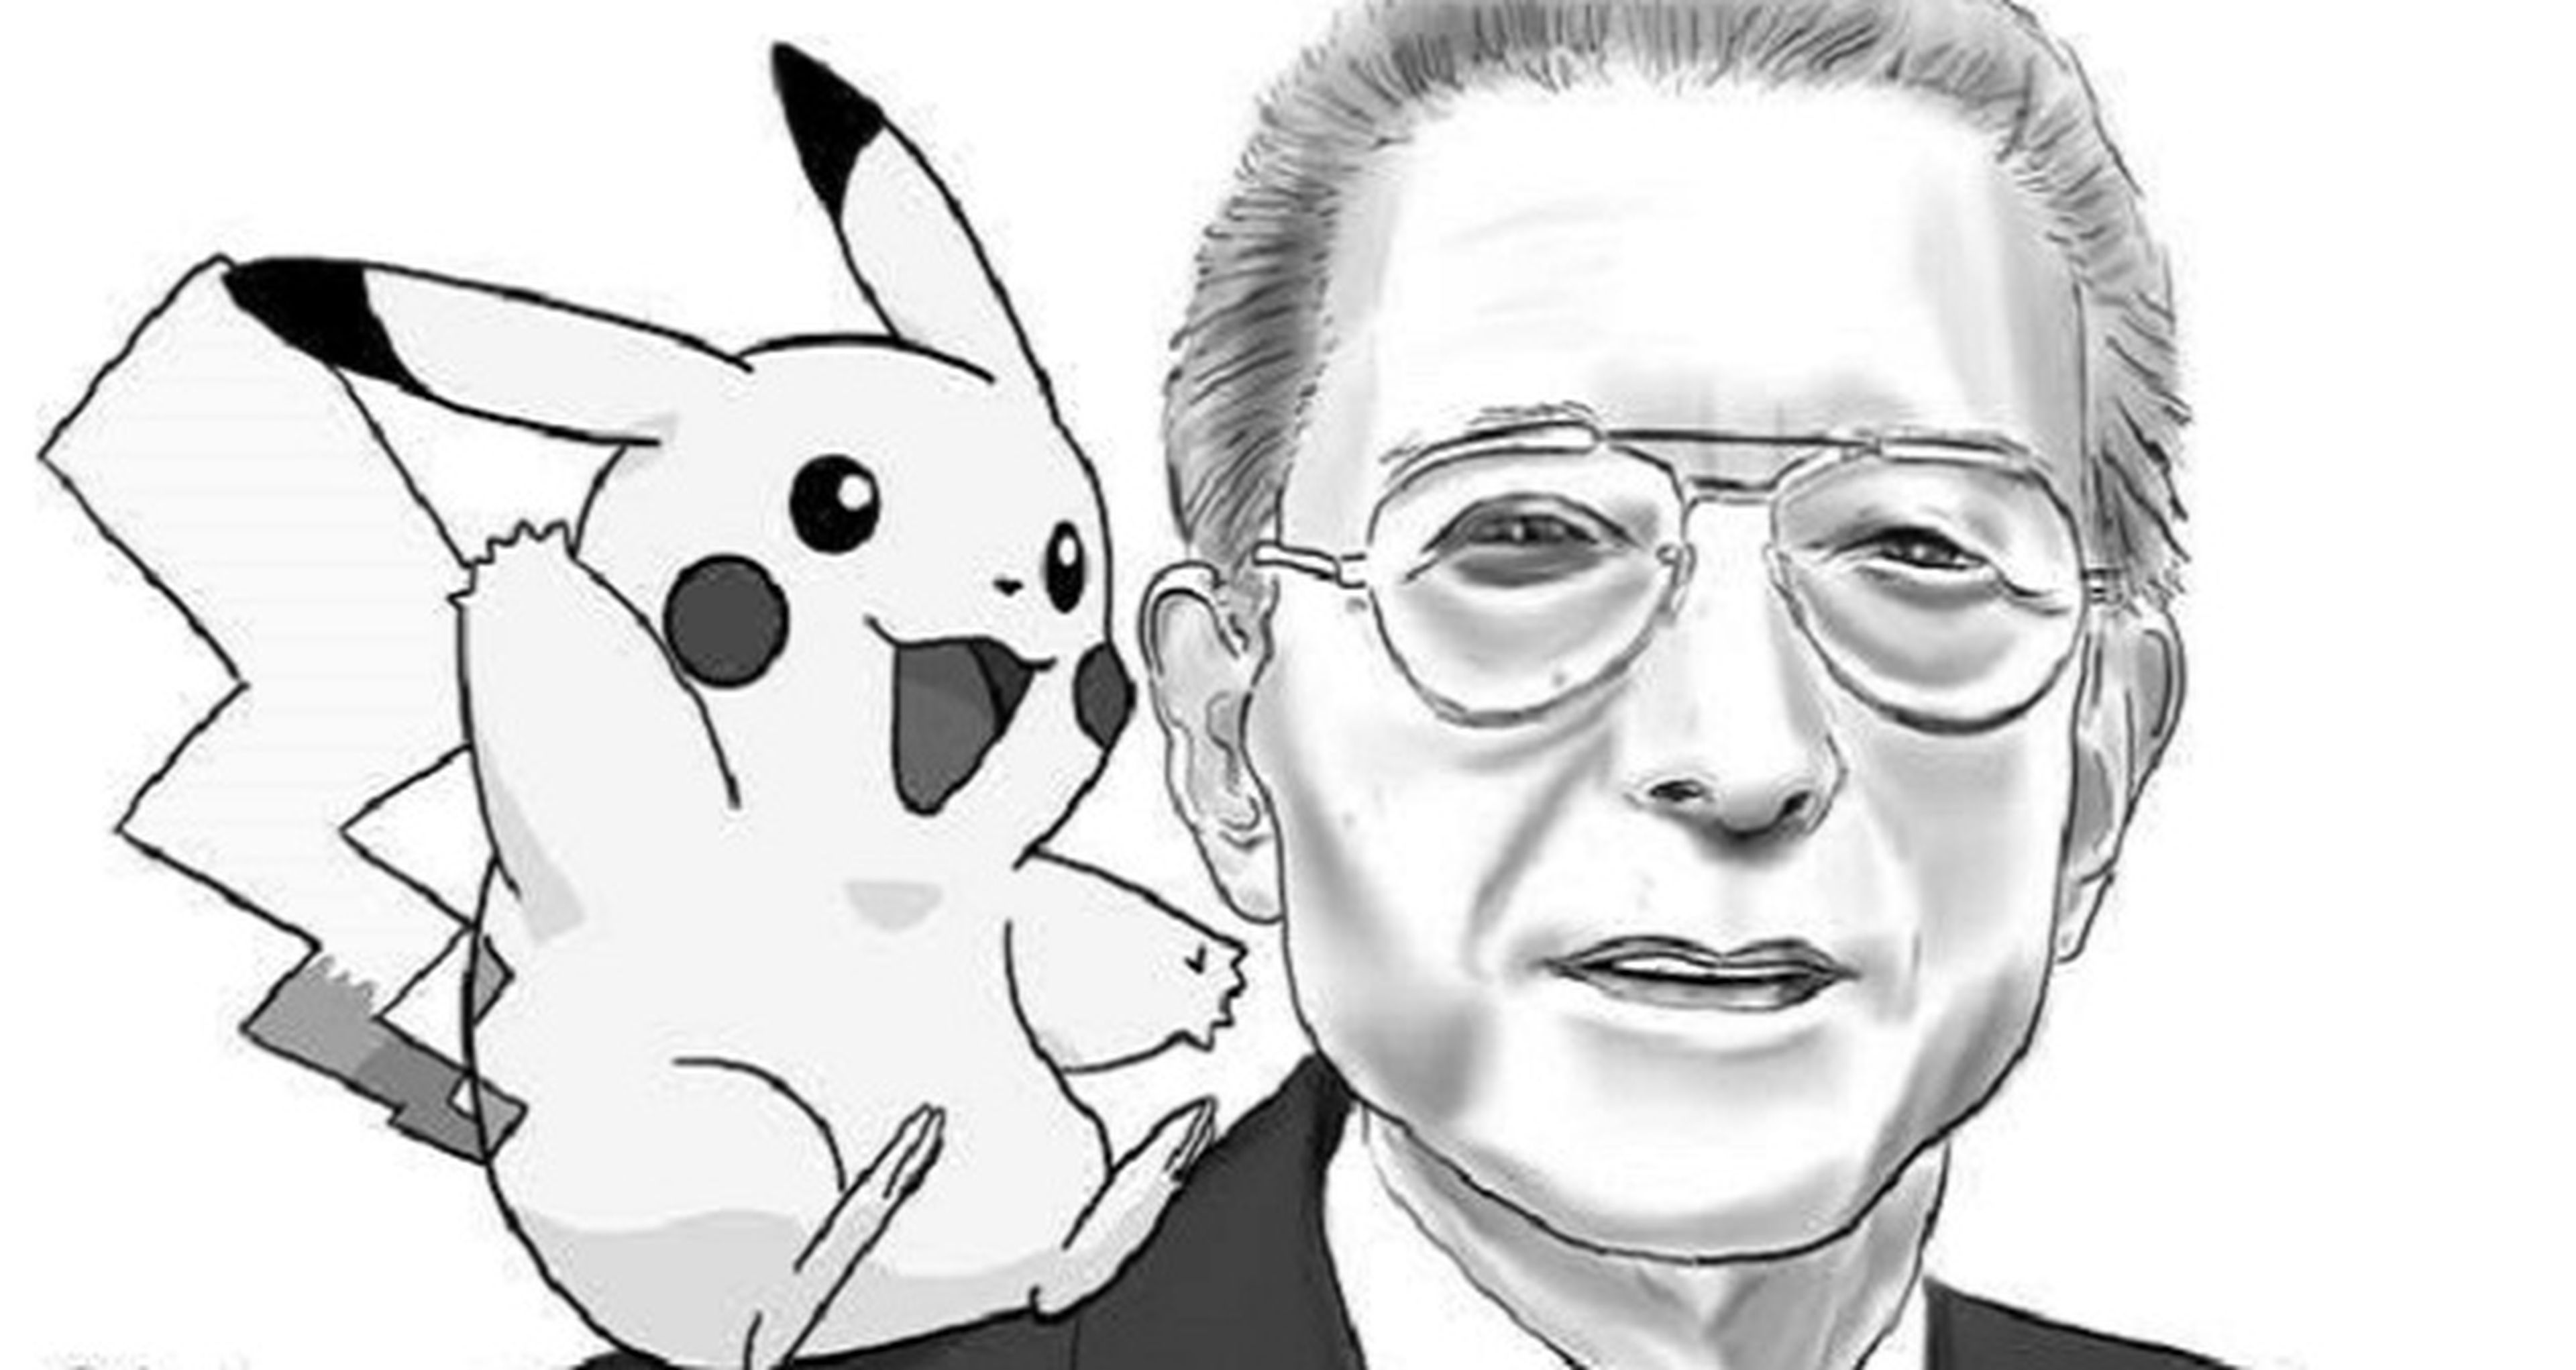 La familia Yamauchi vende parte de sus acciones a Nintendo